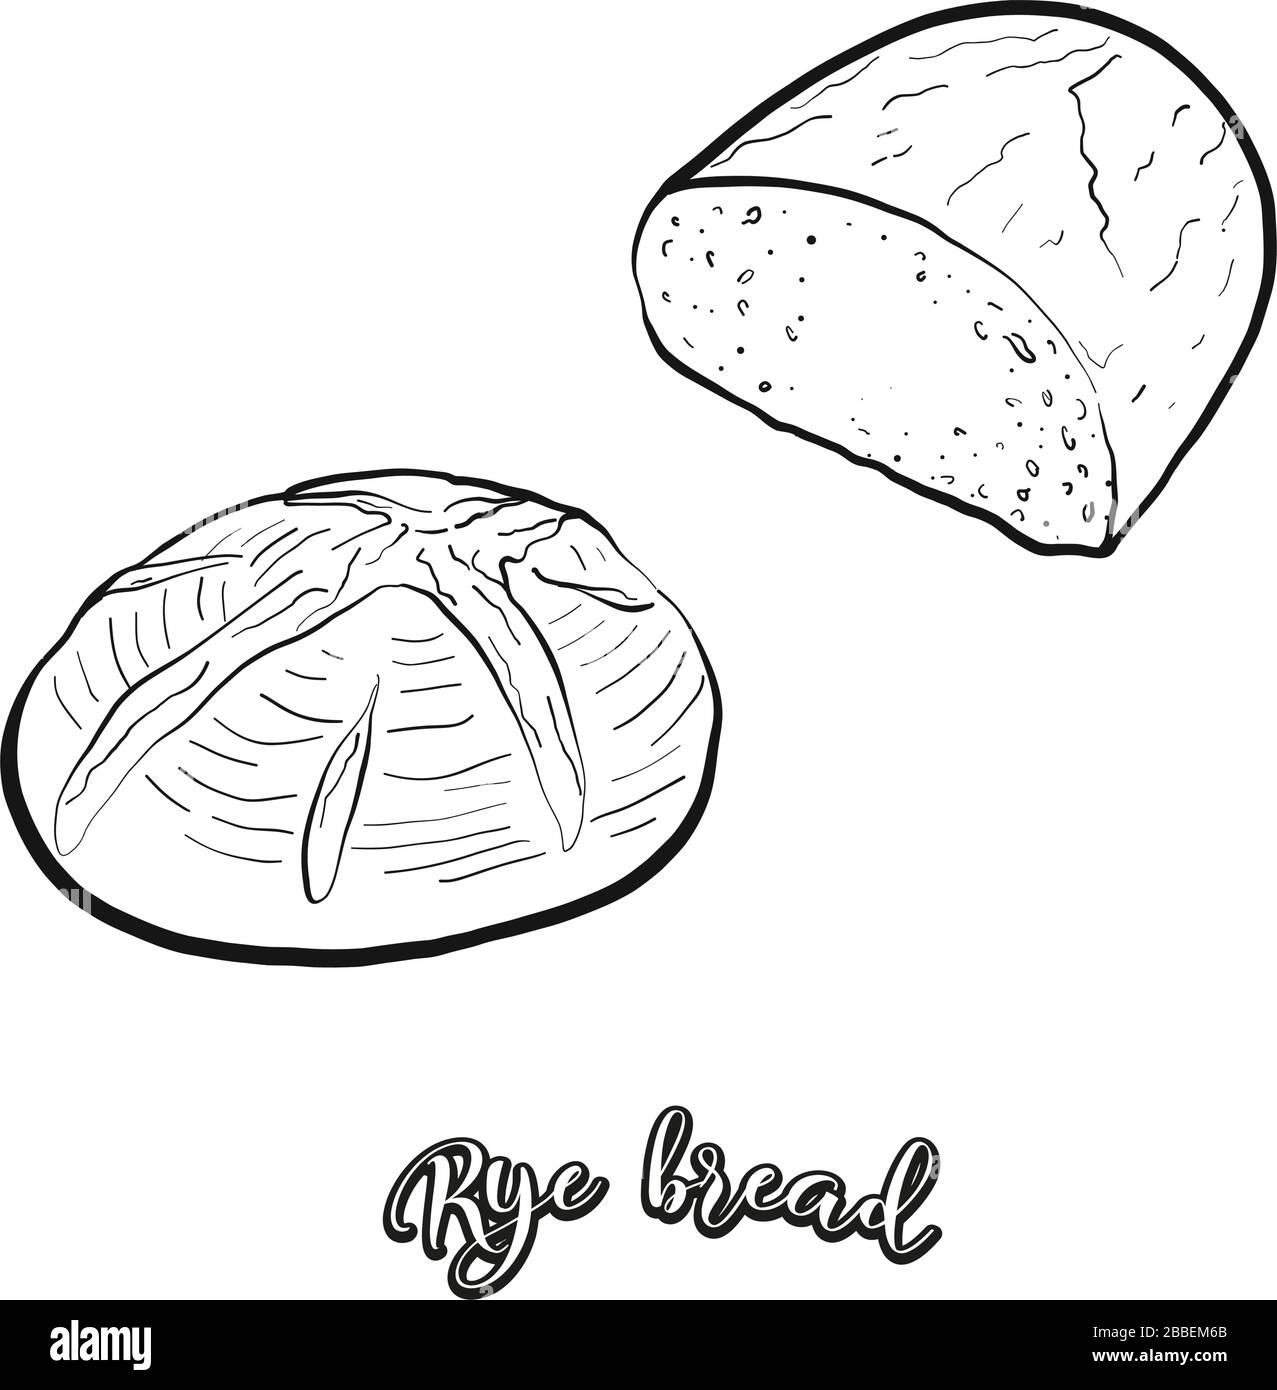 Roggenbrot Essenskizze auf Weiß abgegrenzt. Vektor-Zeichnung von Leaved, meist bekannt in Europa, Amerika, Israel. Lebensmittel-Illustration-Serie. Stock Vektor